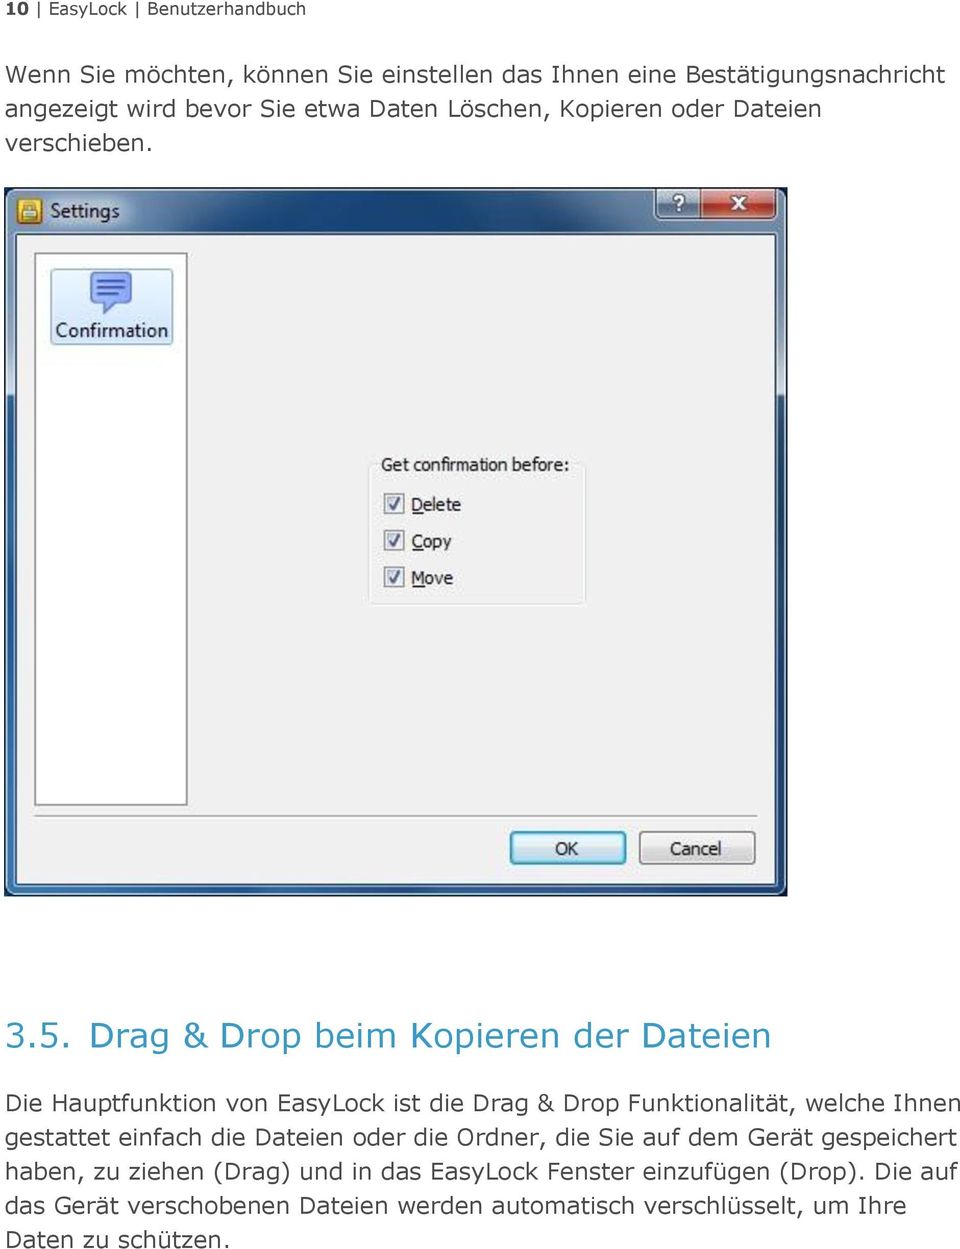 Drag & Drop beim Kopieren der Dateien Die Hauptfunktion von EasyLock ist die Drag & Drop Funktionalität, welche Ihnen gestattet einfach die